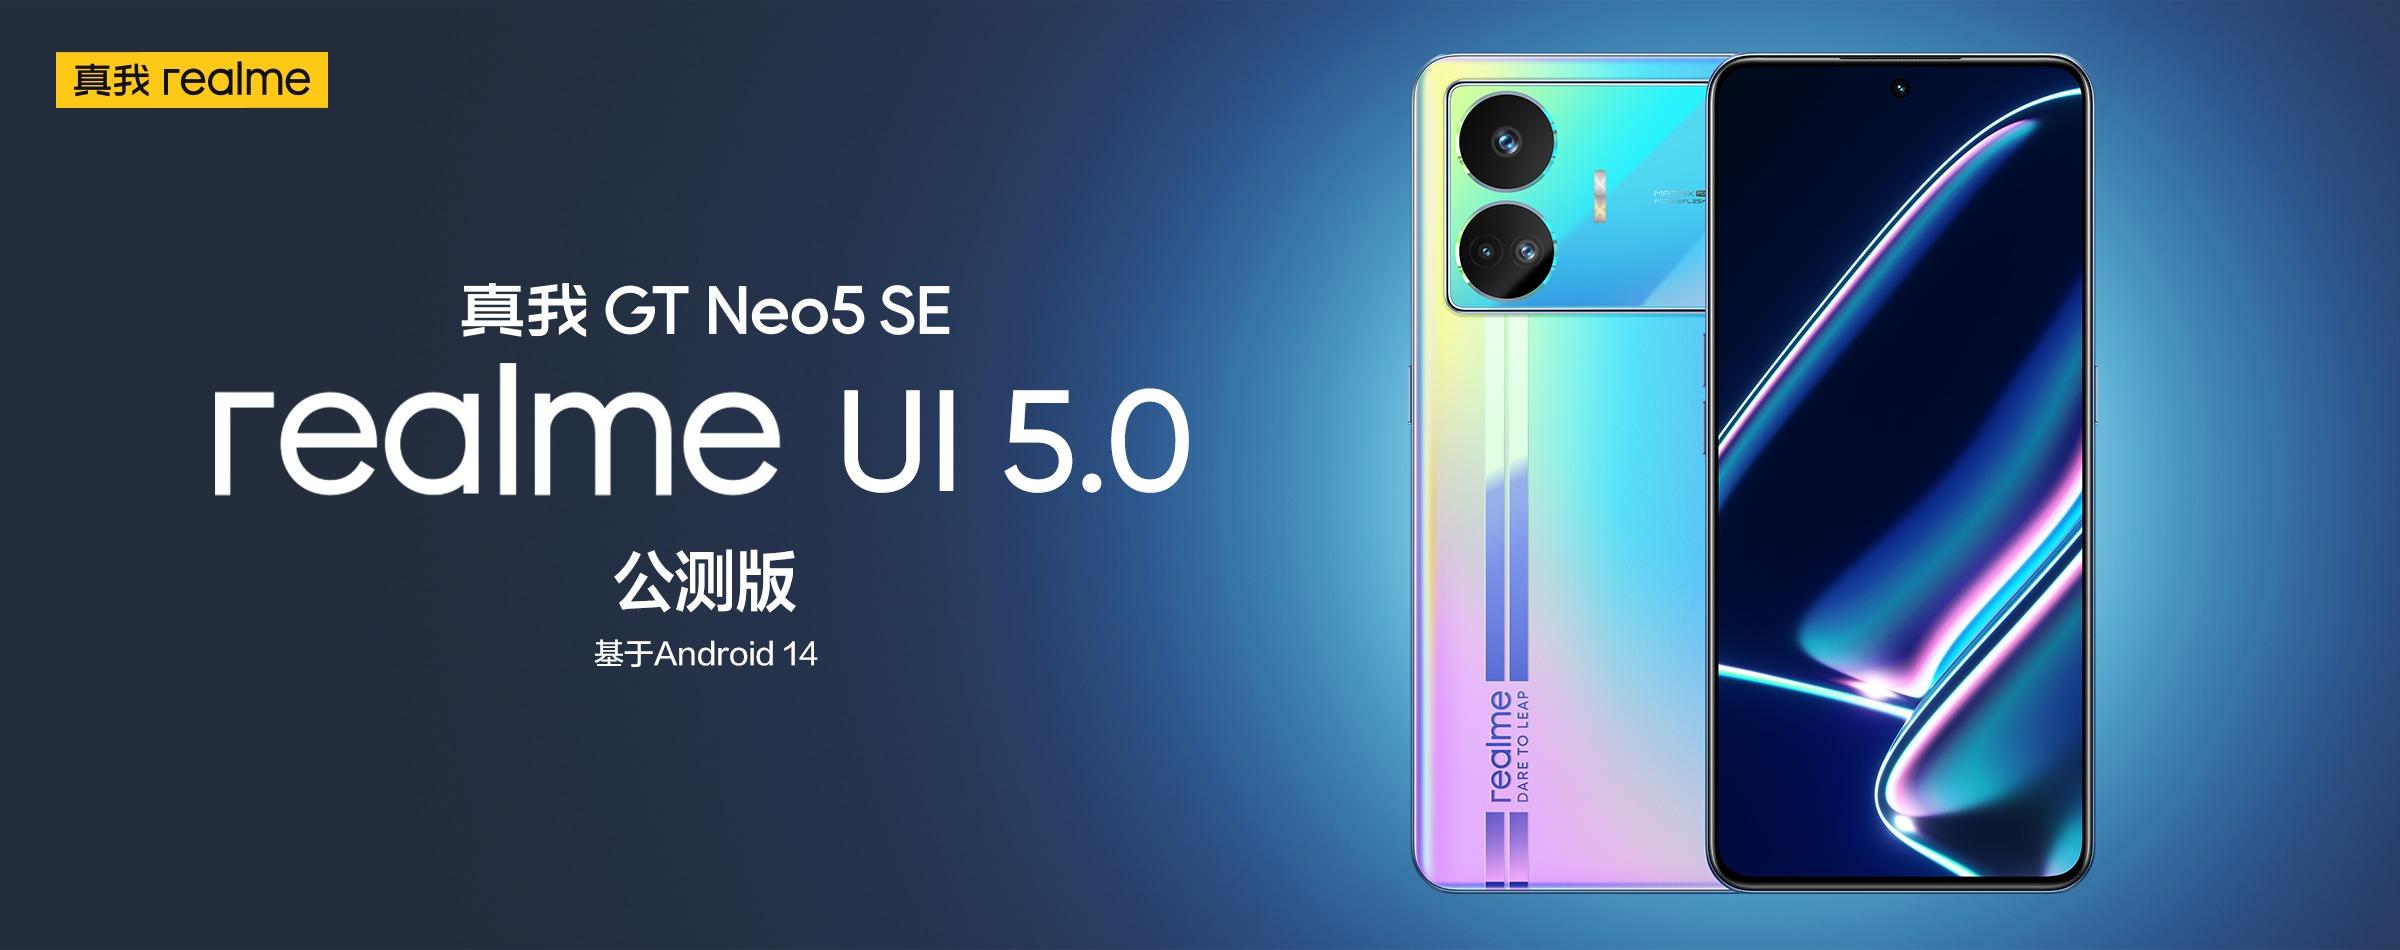 De realme GT Neo 5 SE heeft een bètaversie van realme UI 5.0 op basis van Android 14 ontvangen.